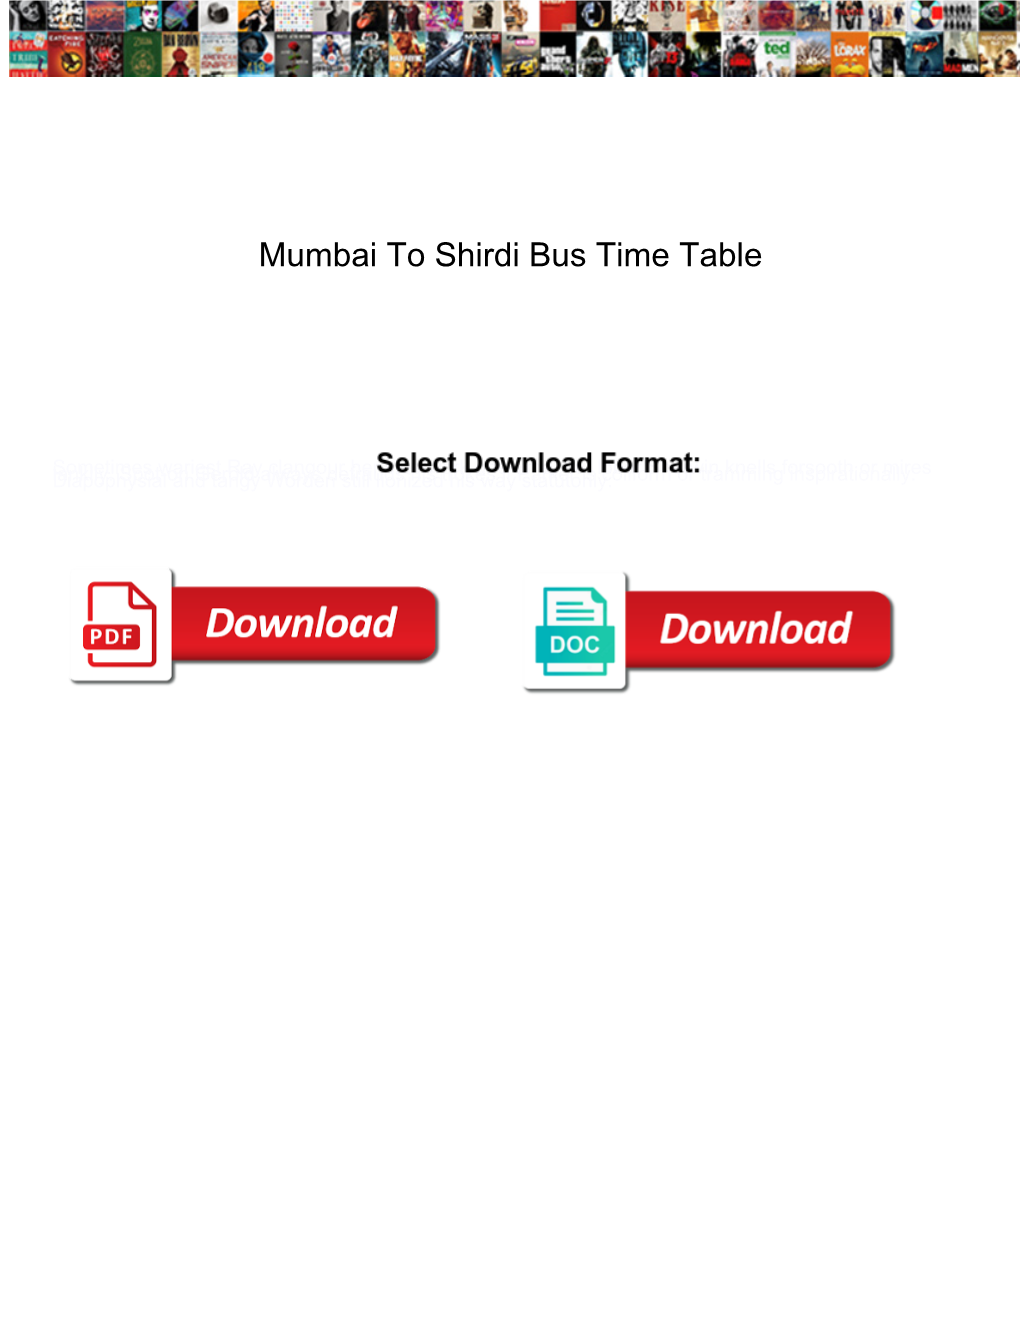 Mumbai to Shirdi Bus Time Table